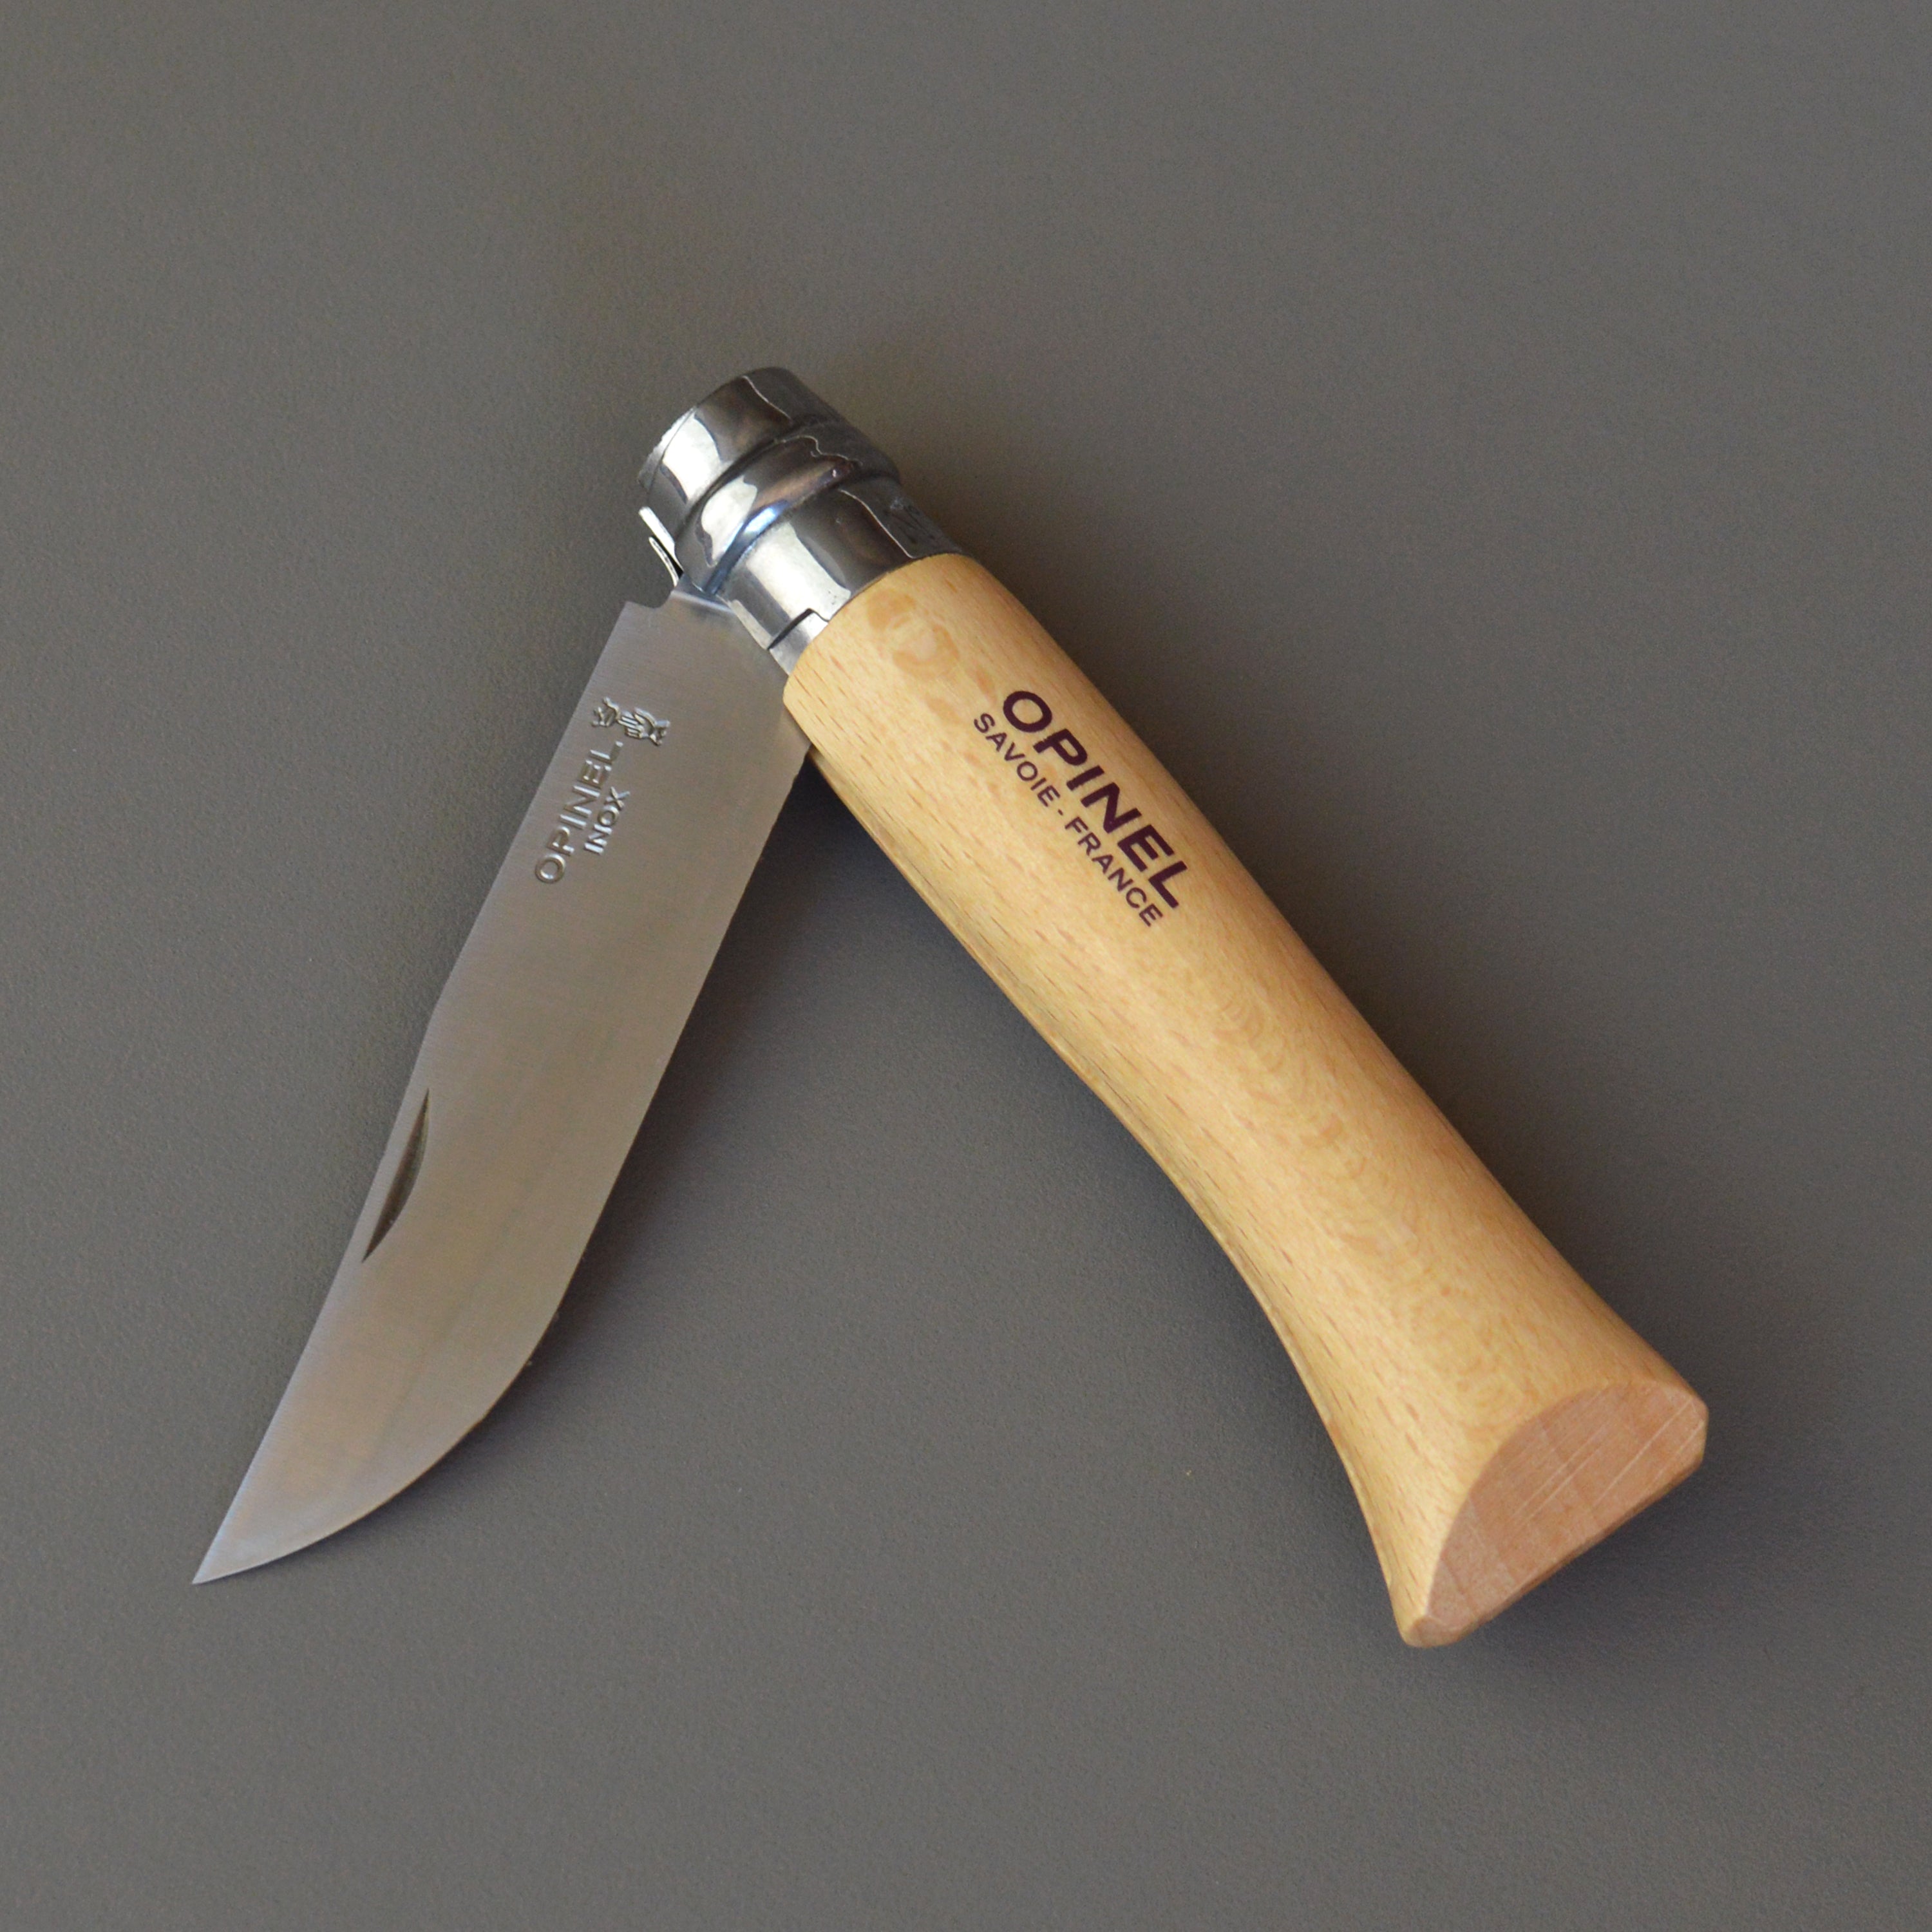 Opinel Opinel No.10 Folding Knife & Corkscrew